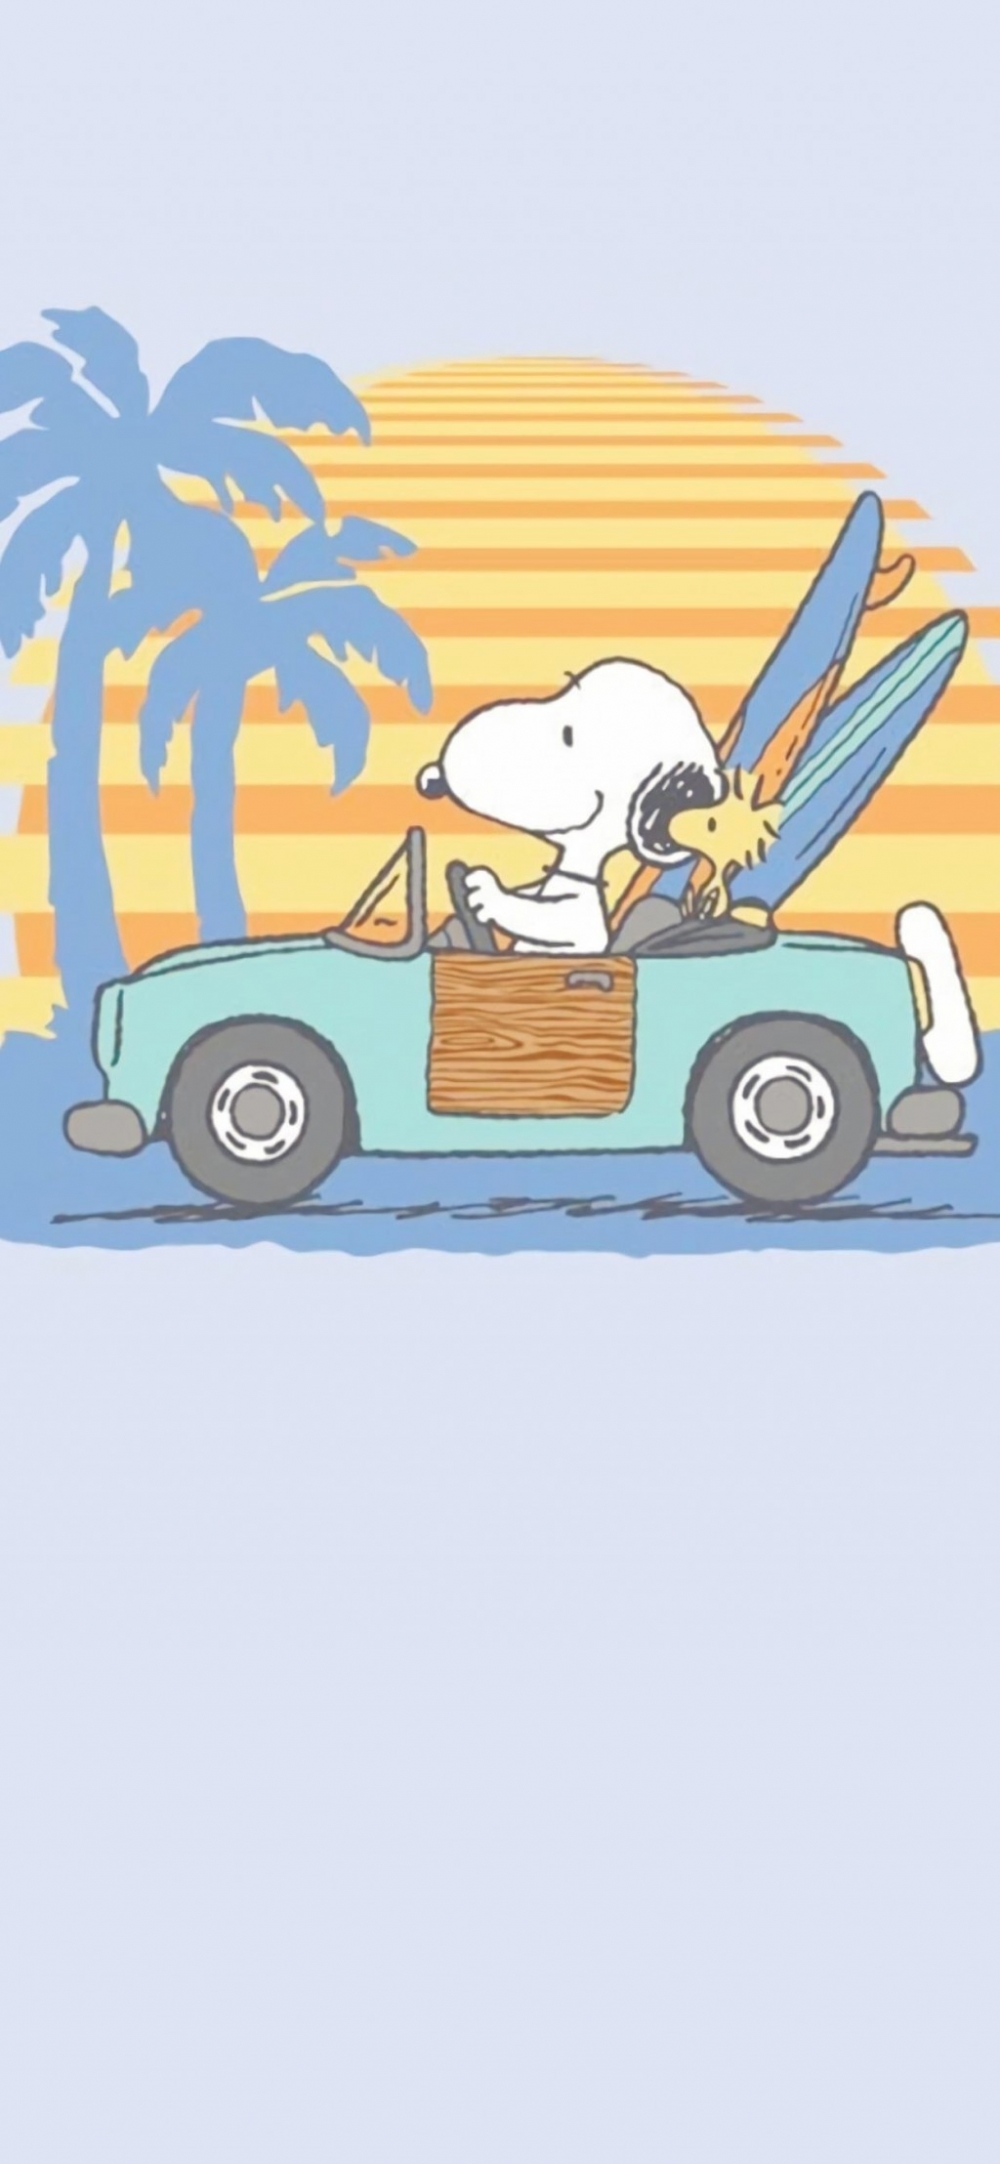 美国卡通动漫人物可爱的史努比狗狗简约手绘全屏壁纸